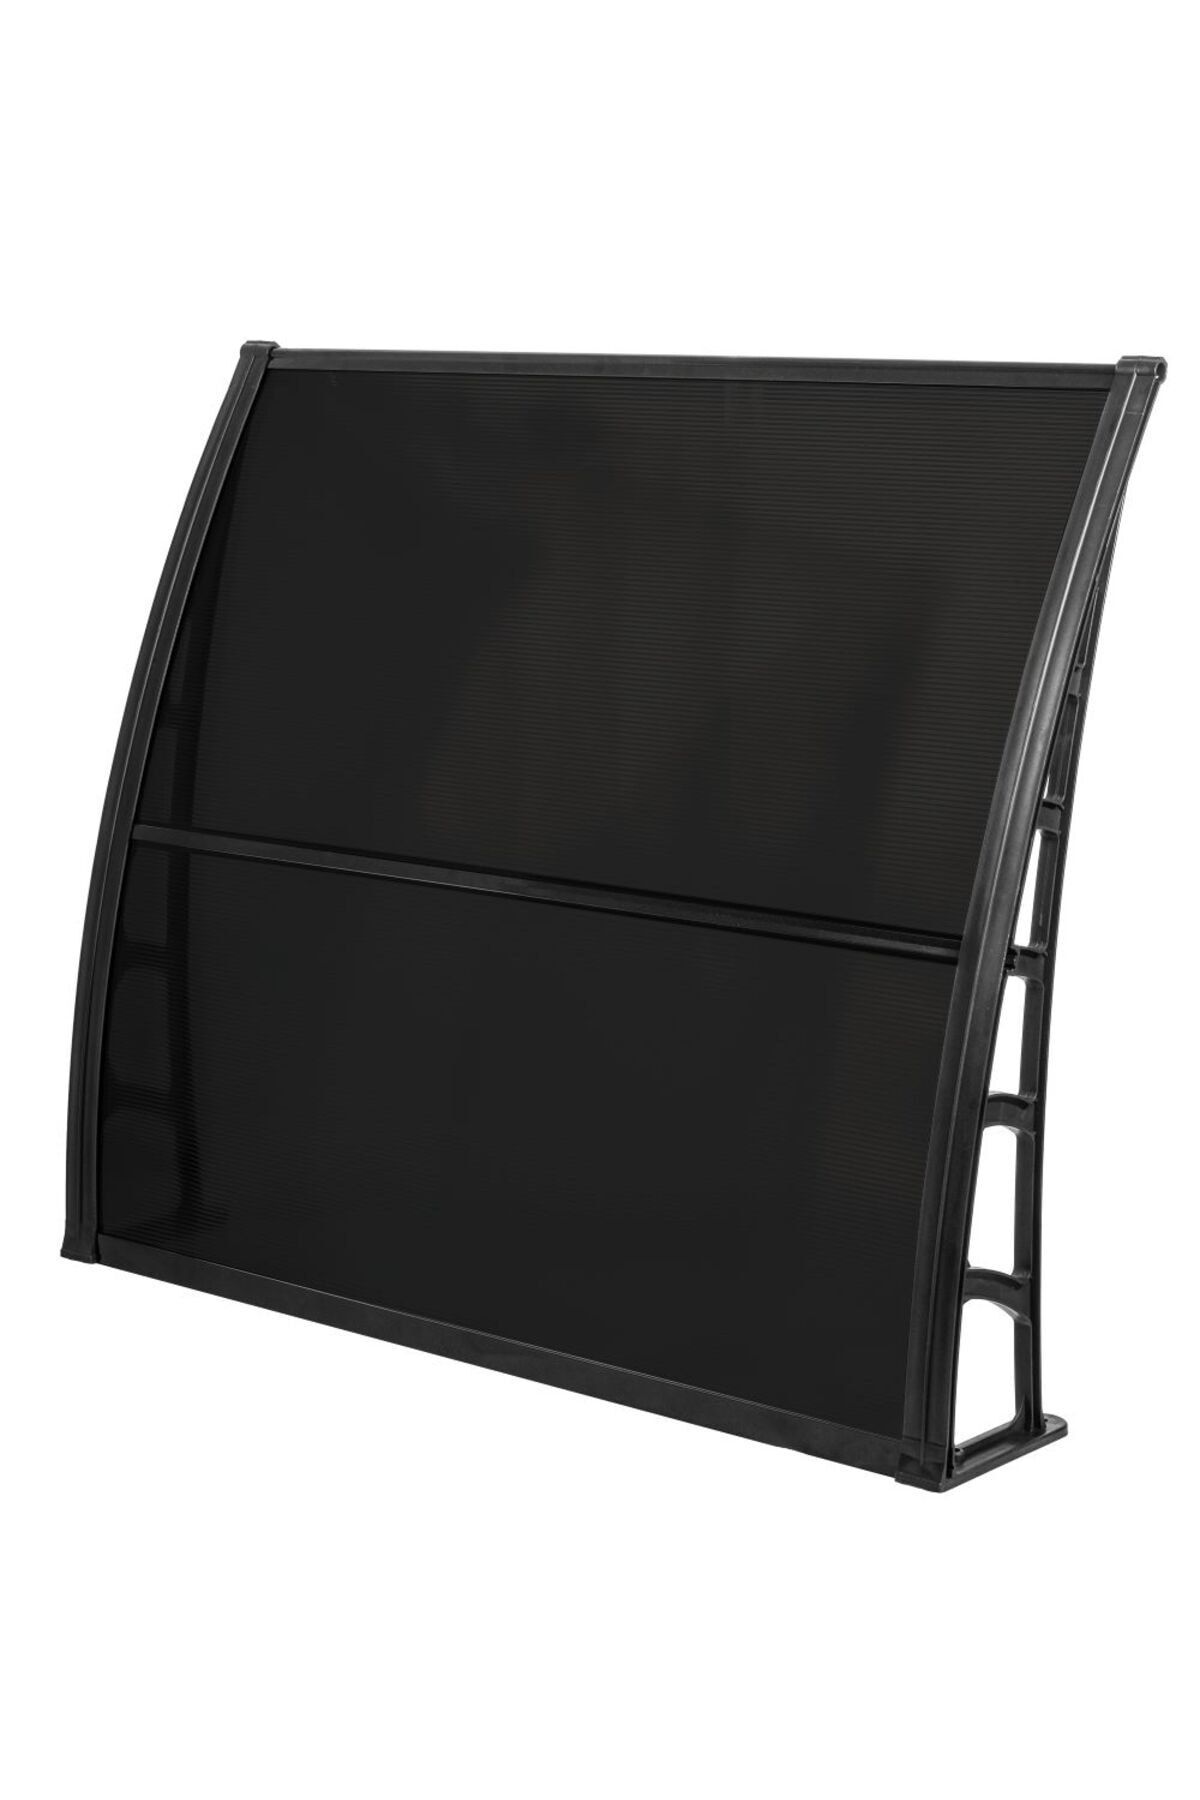 Genel Markalar LUPIN Kapı Pencere Üstü Pratik Sundurma 105x120 cm - Siyah